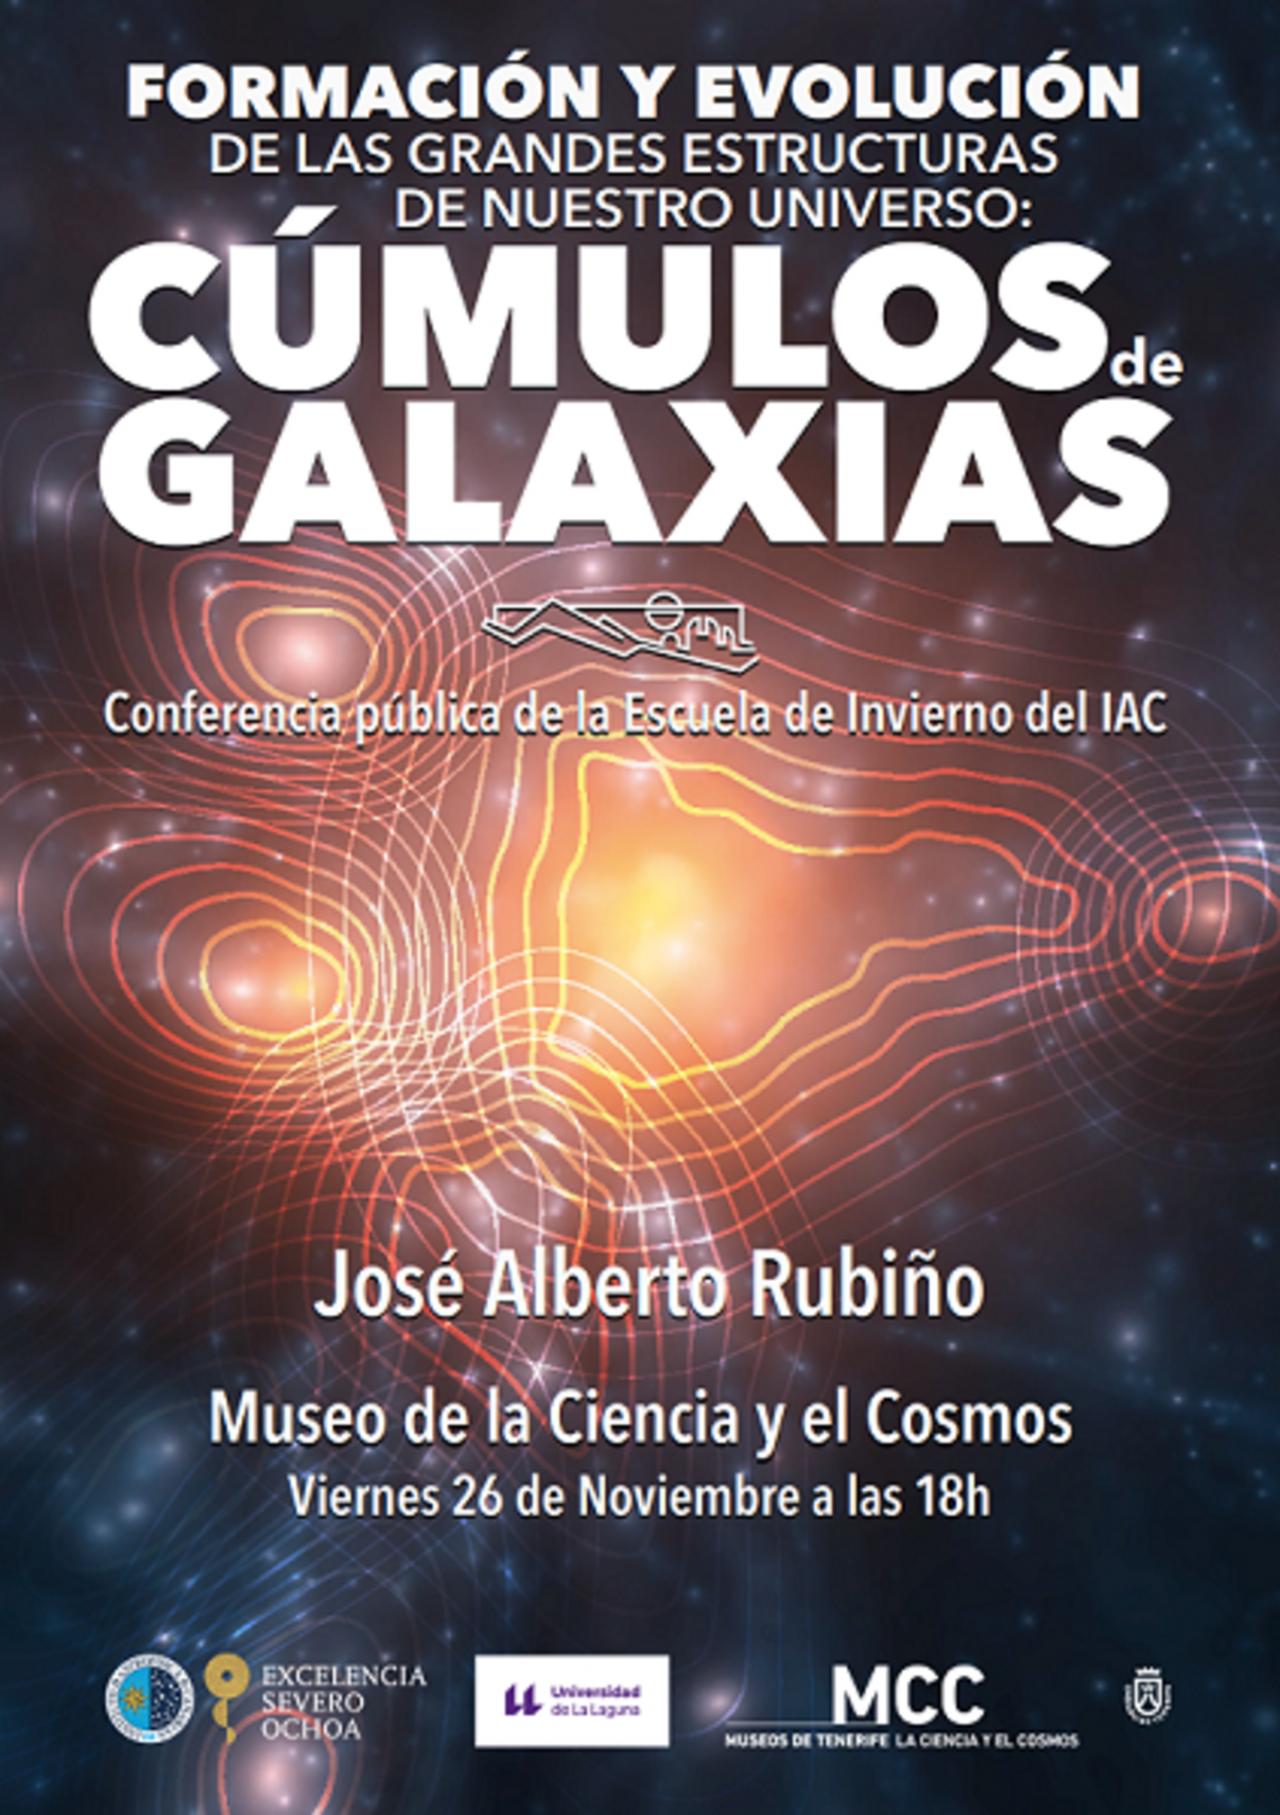 Cartel de la charla “Formación y evolución de las grandes estructuras de nuestro Universo: los cúmulos de galaxias”